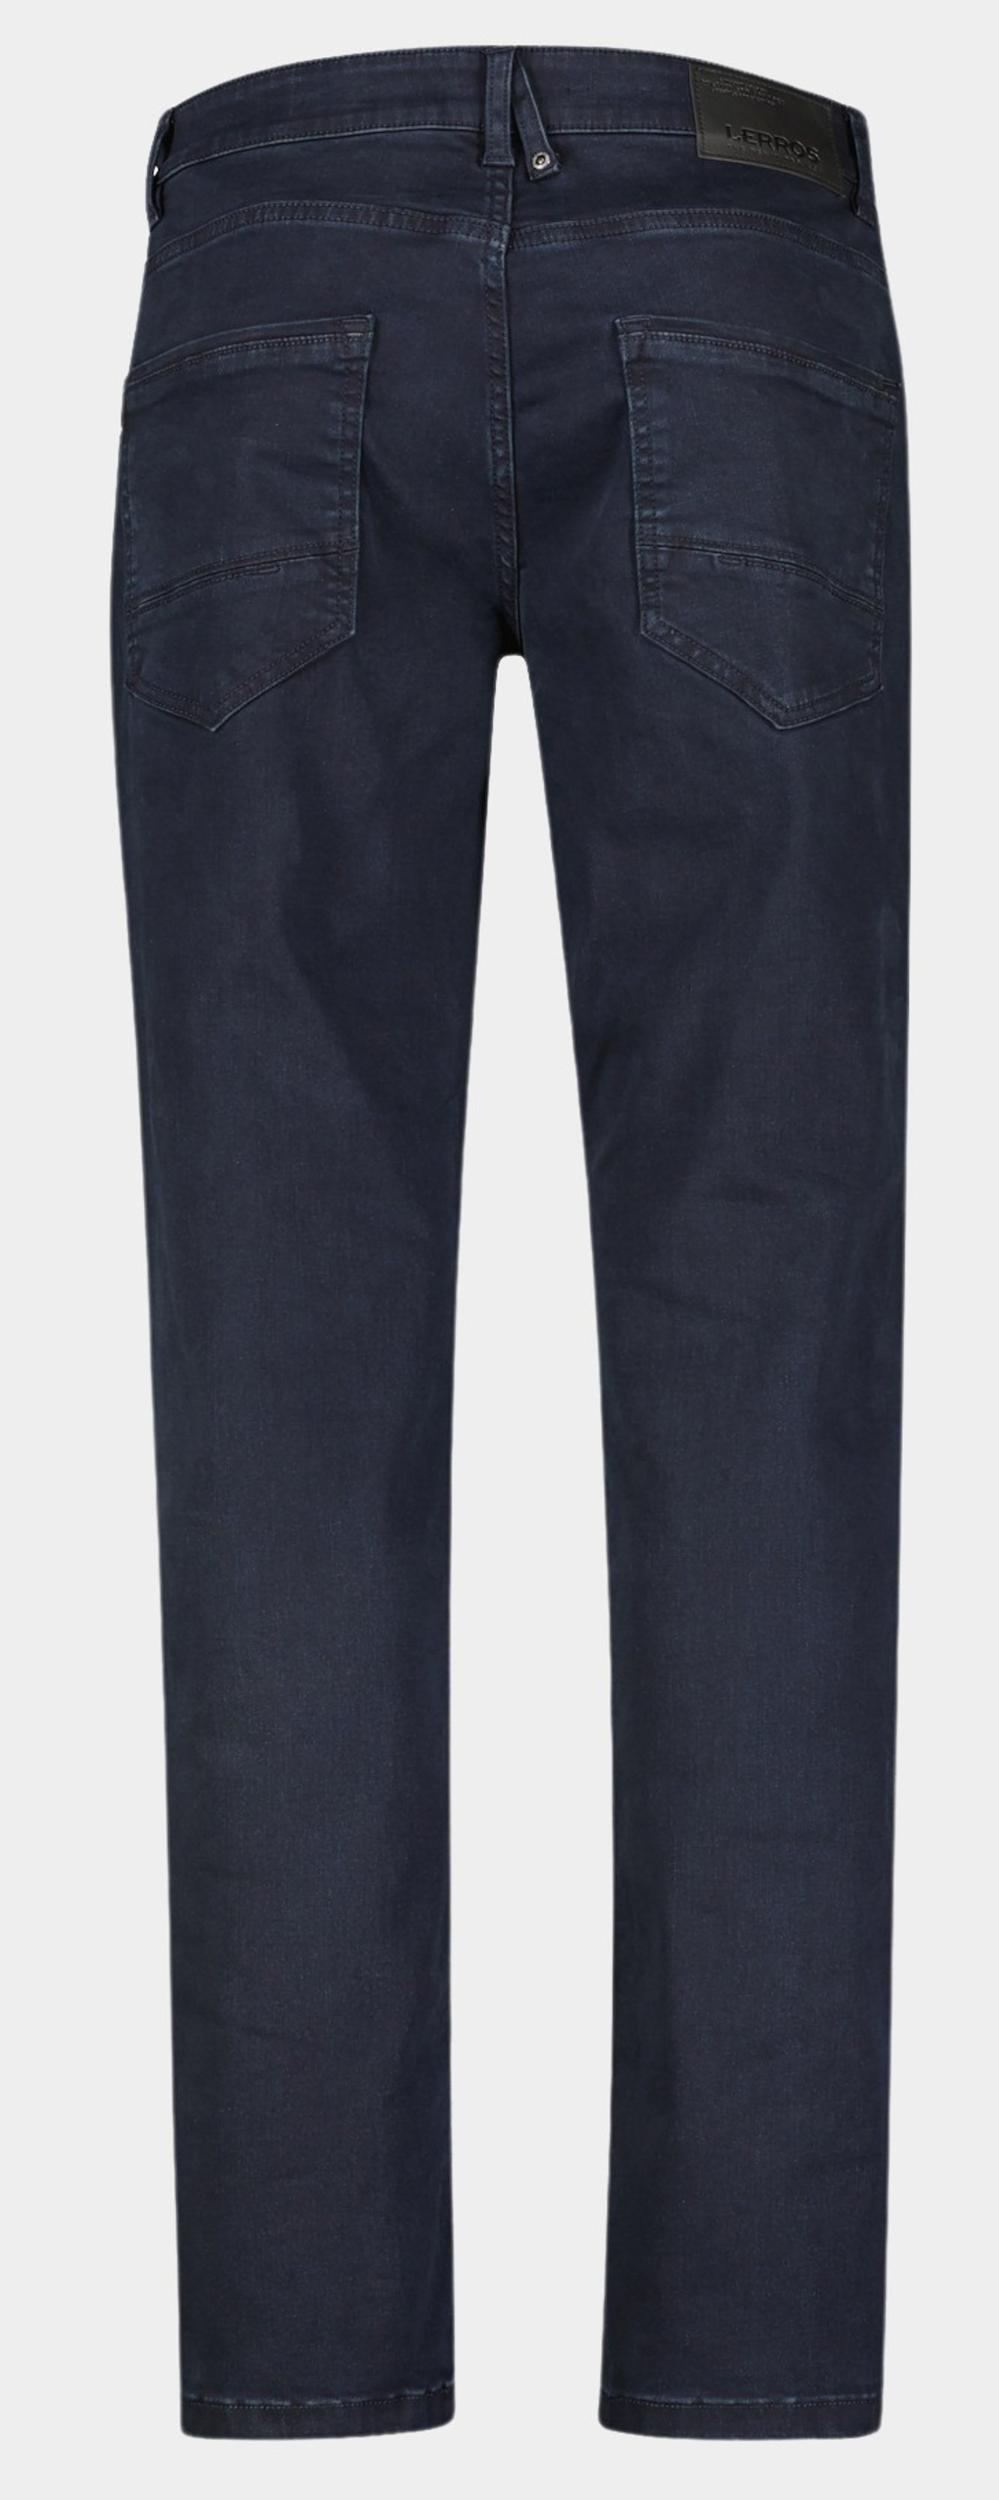 Lerros 5-Pocket Jeans Blauw DENIMHOSE LANG 2009366/495